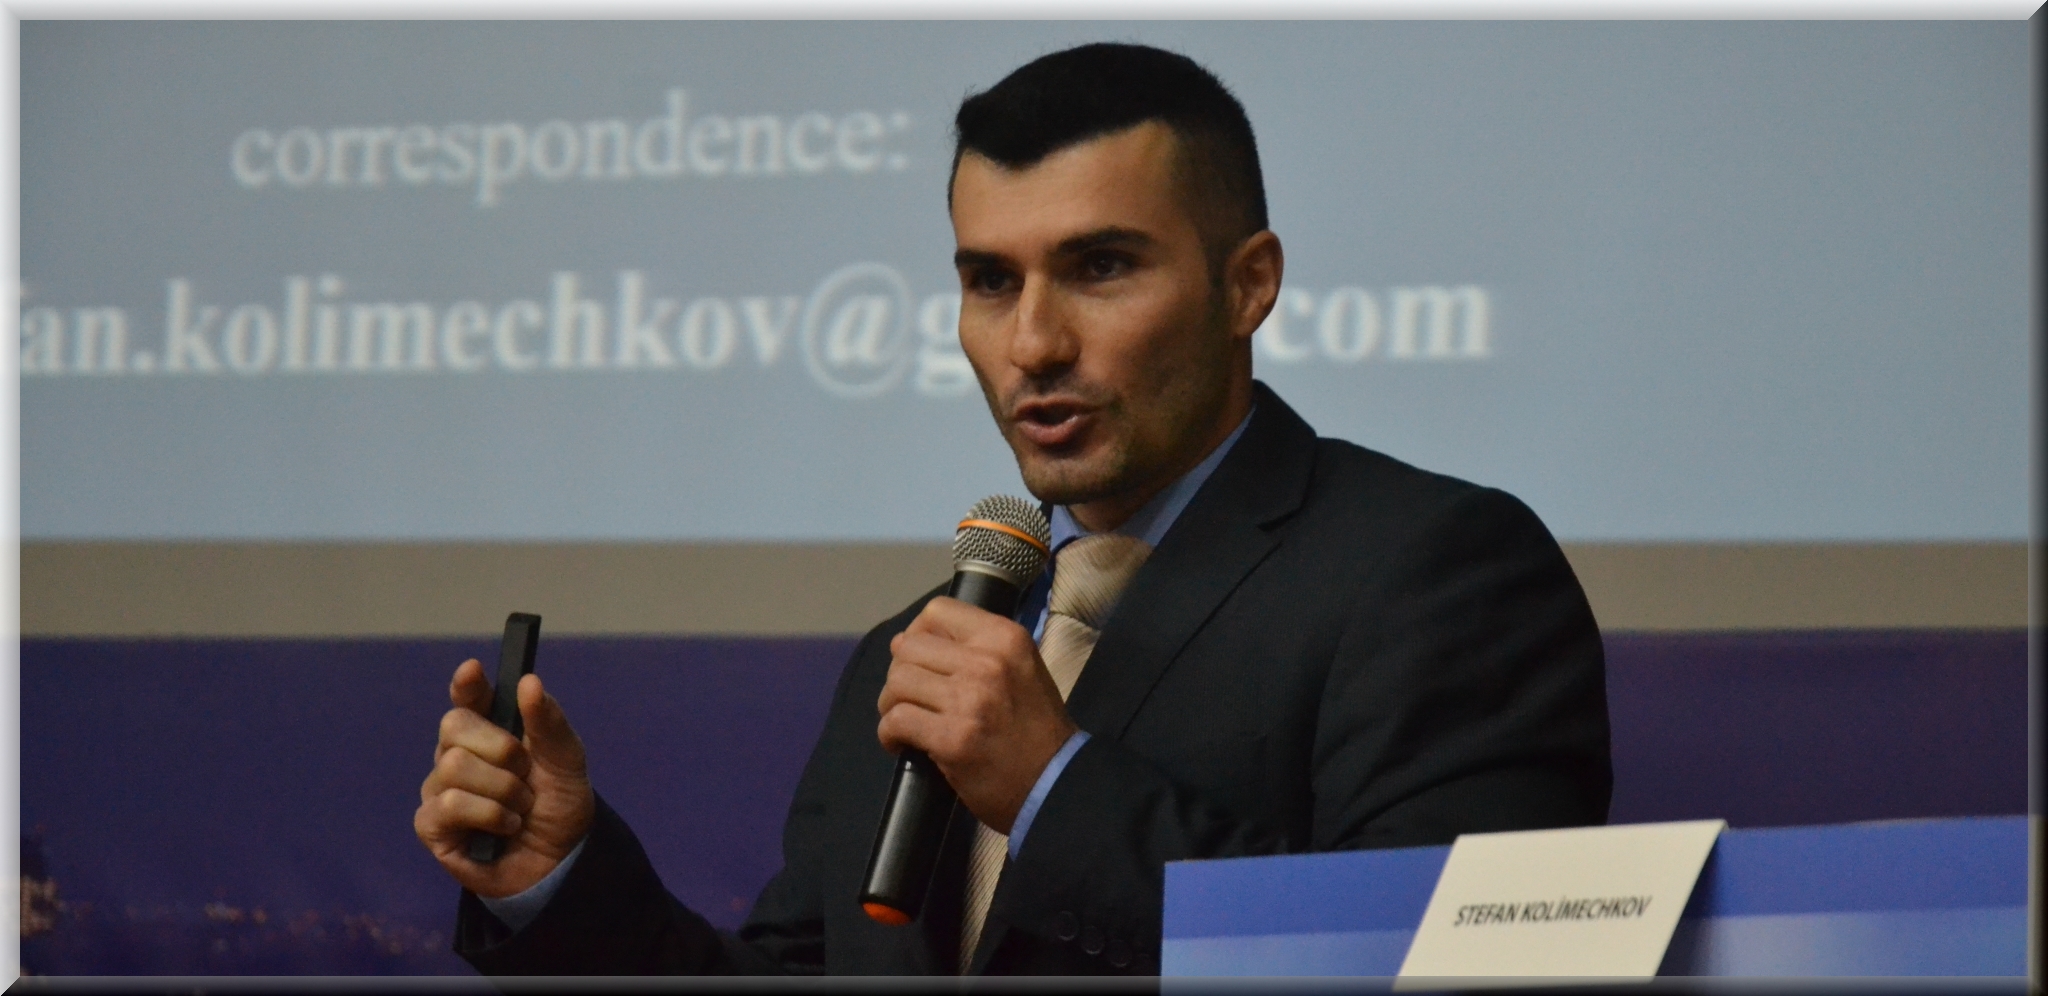 Dr Stefan Kolimechkov presenting at academic conferences